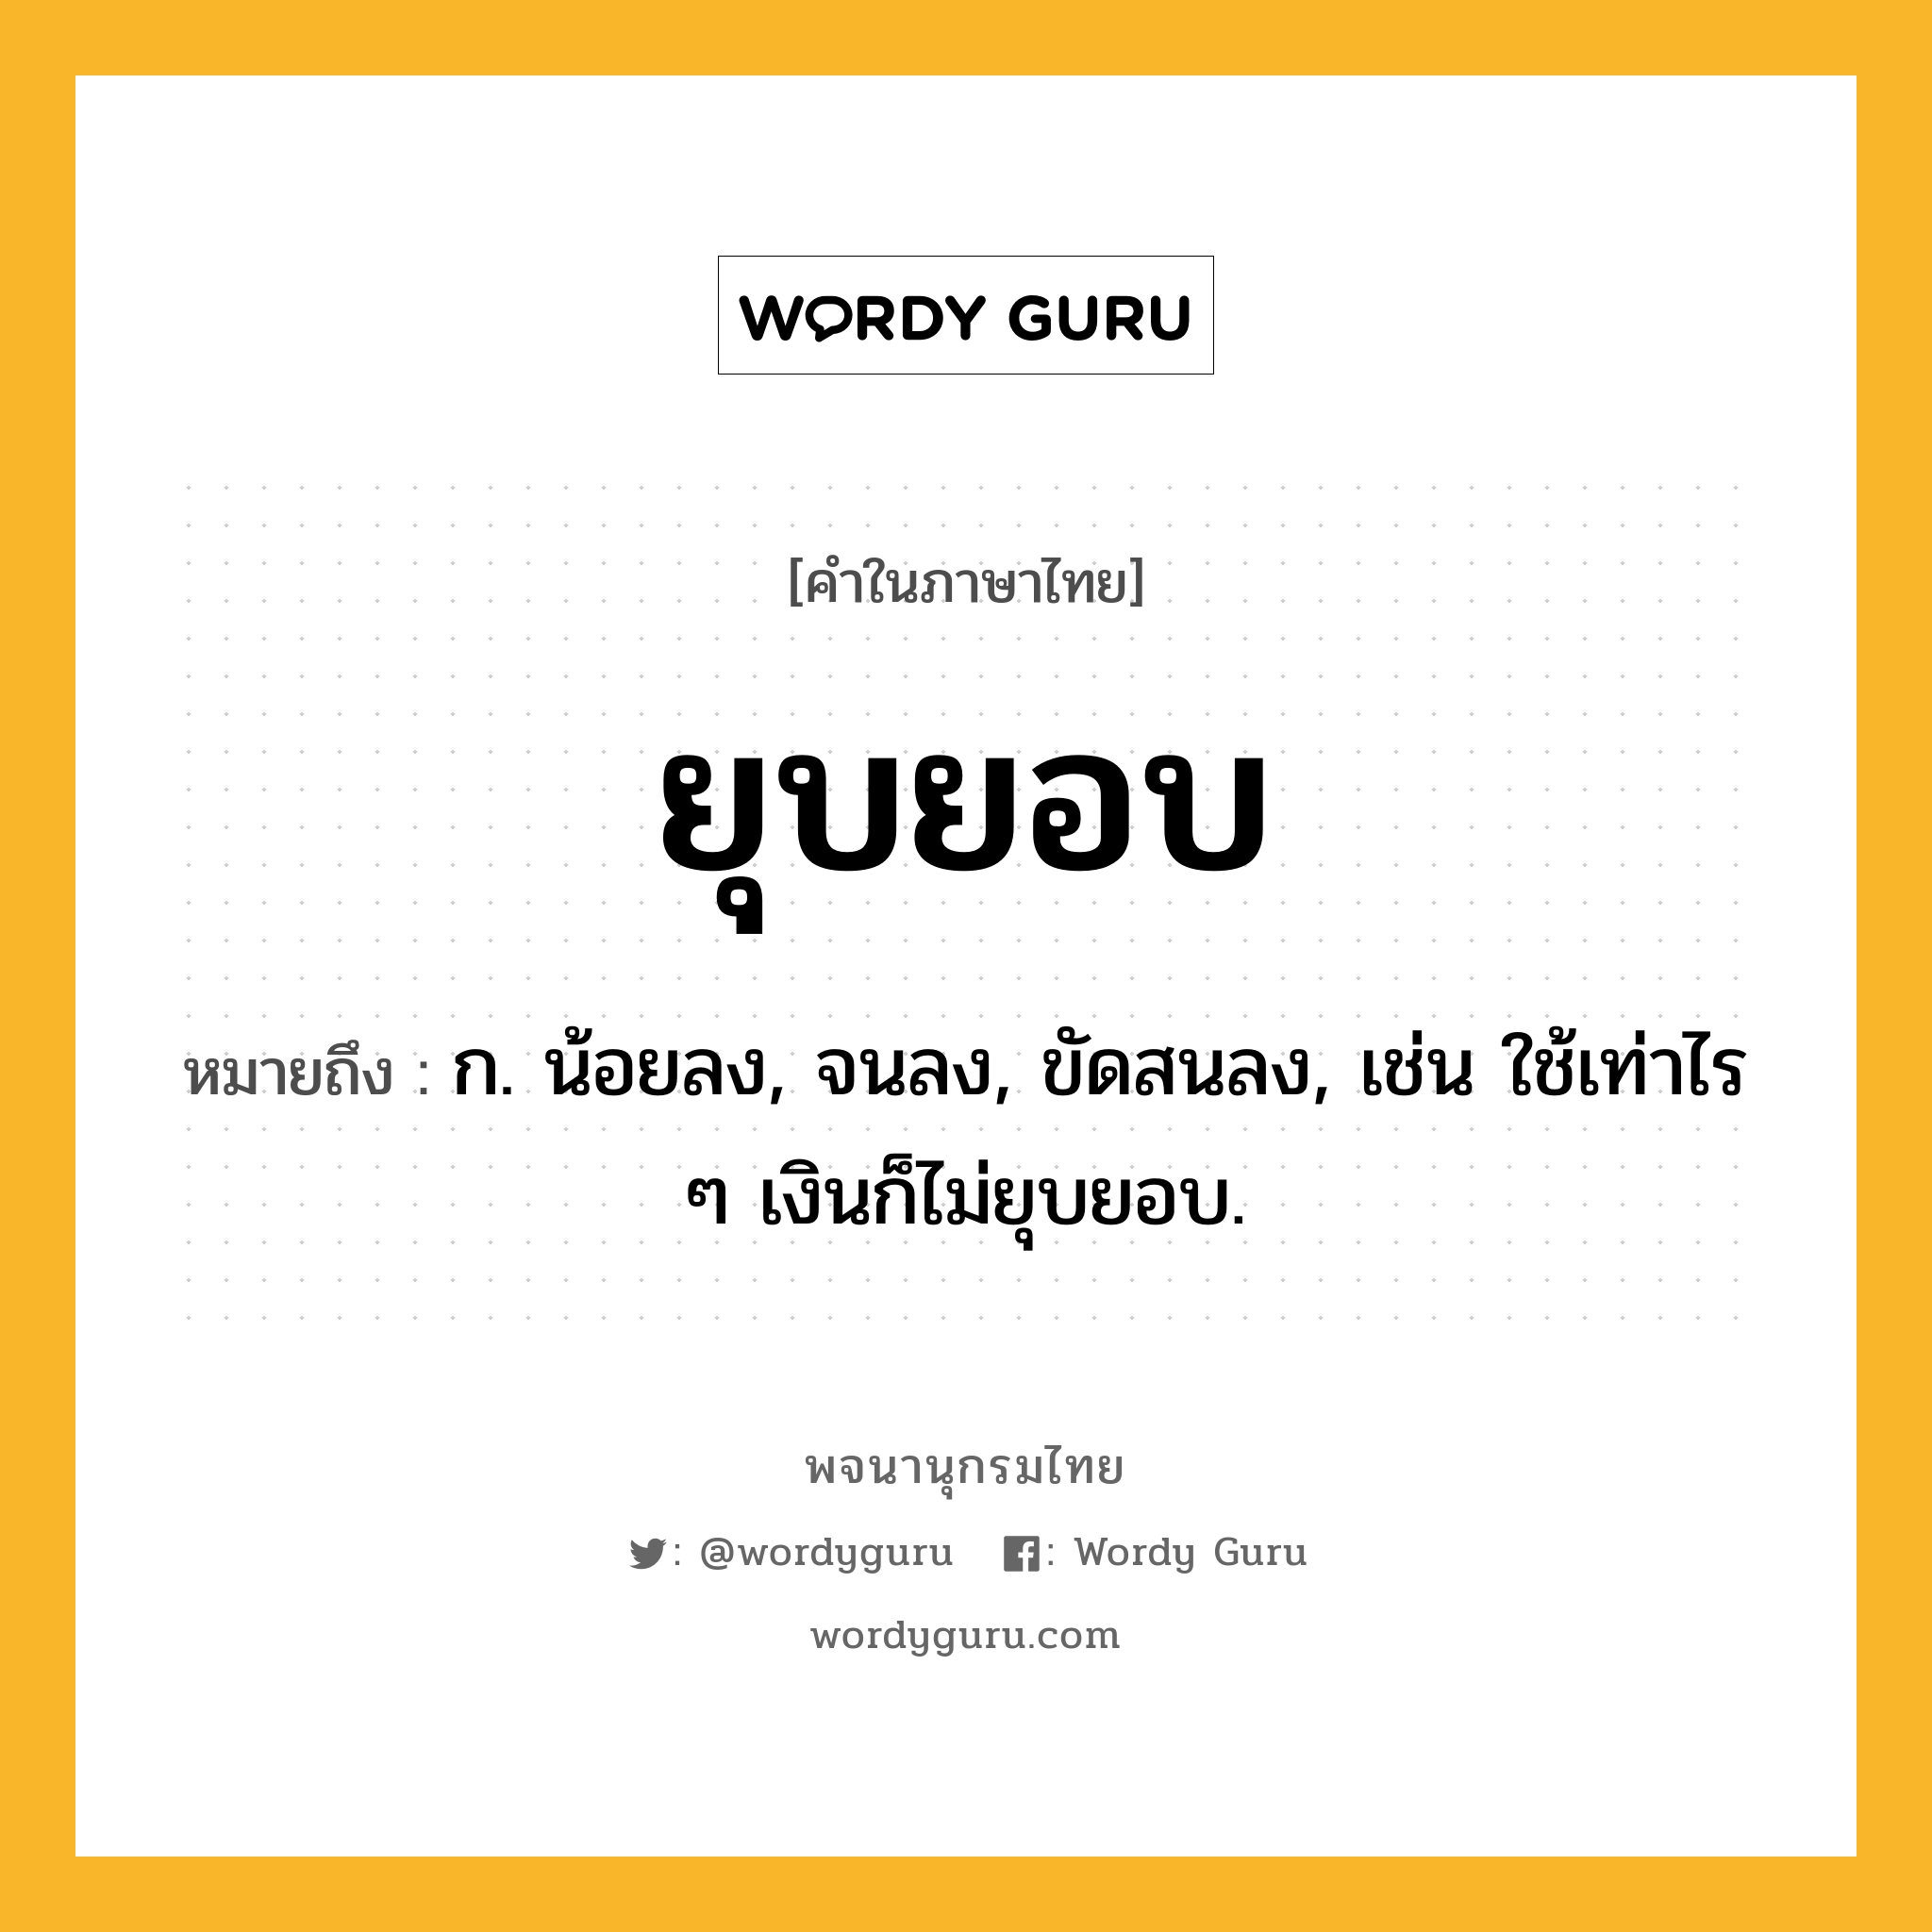 ยุบยอบ หมายถึงอะไร?, คำในภาษาไทย ยุบยอบ หมายถึง ก. น้อยลง, จนลง, ขัดสนลง, เช่น ใช้เท่าไร ๆ เงินก็ไม่ยุบยอบ.